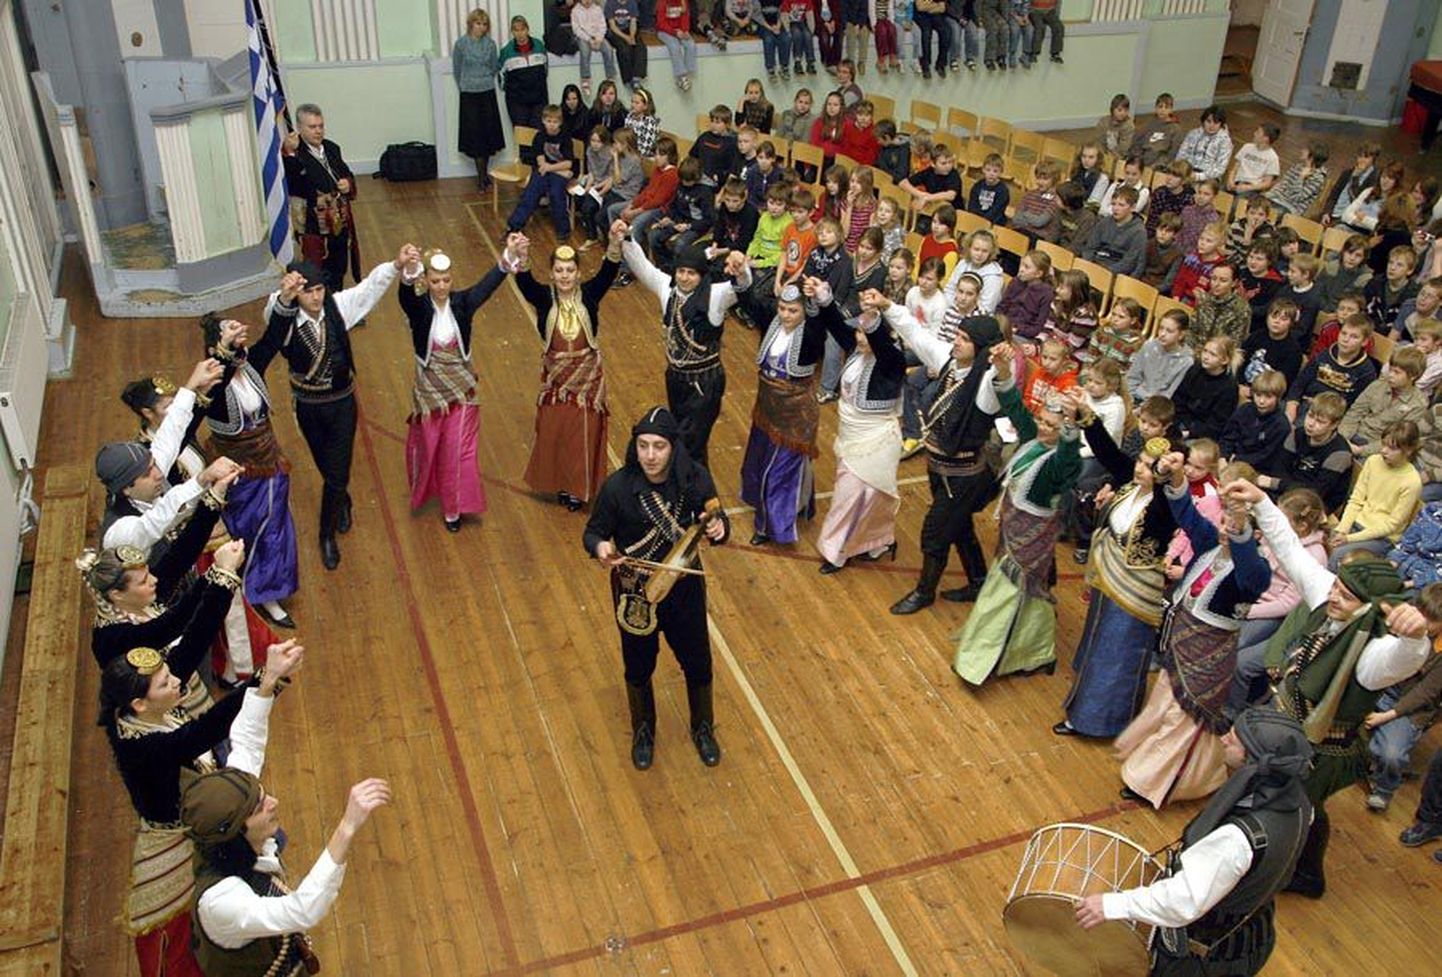 Aasta eest köitsid talvepeol tantsuhuviliste viljandimaalaste meeli kreeklased. Tänavu astuvad siinse publiku
ette türklased ja soomlased.